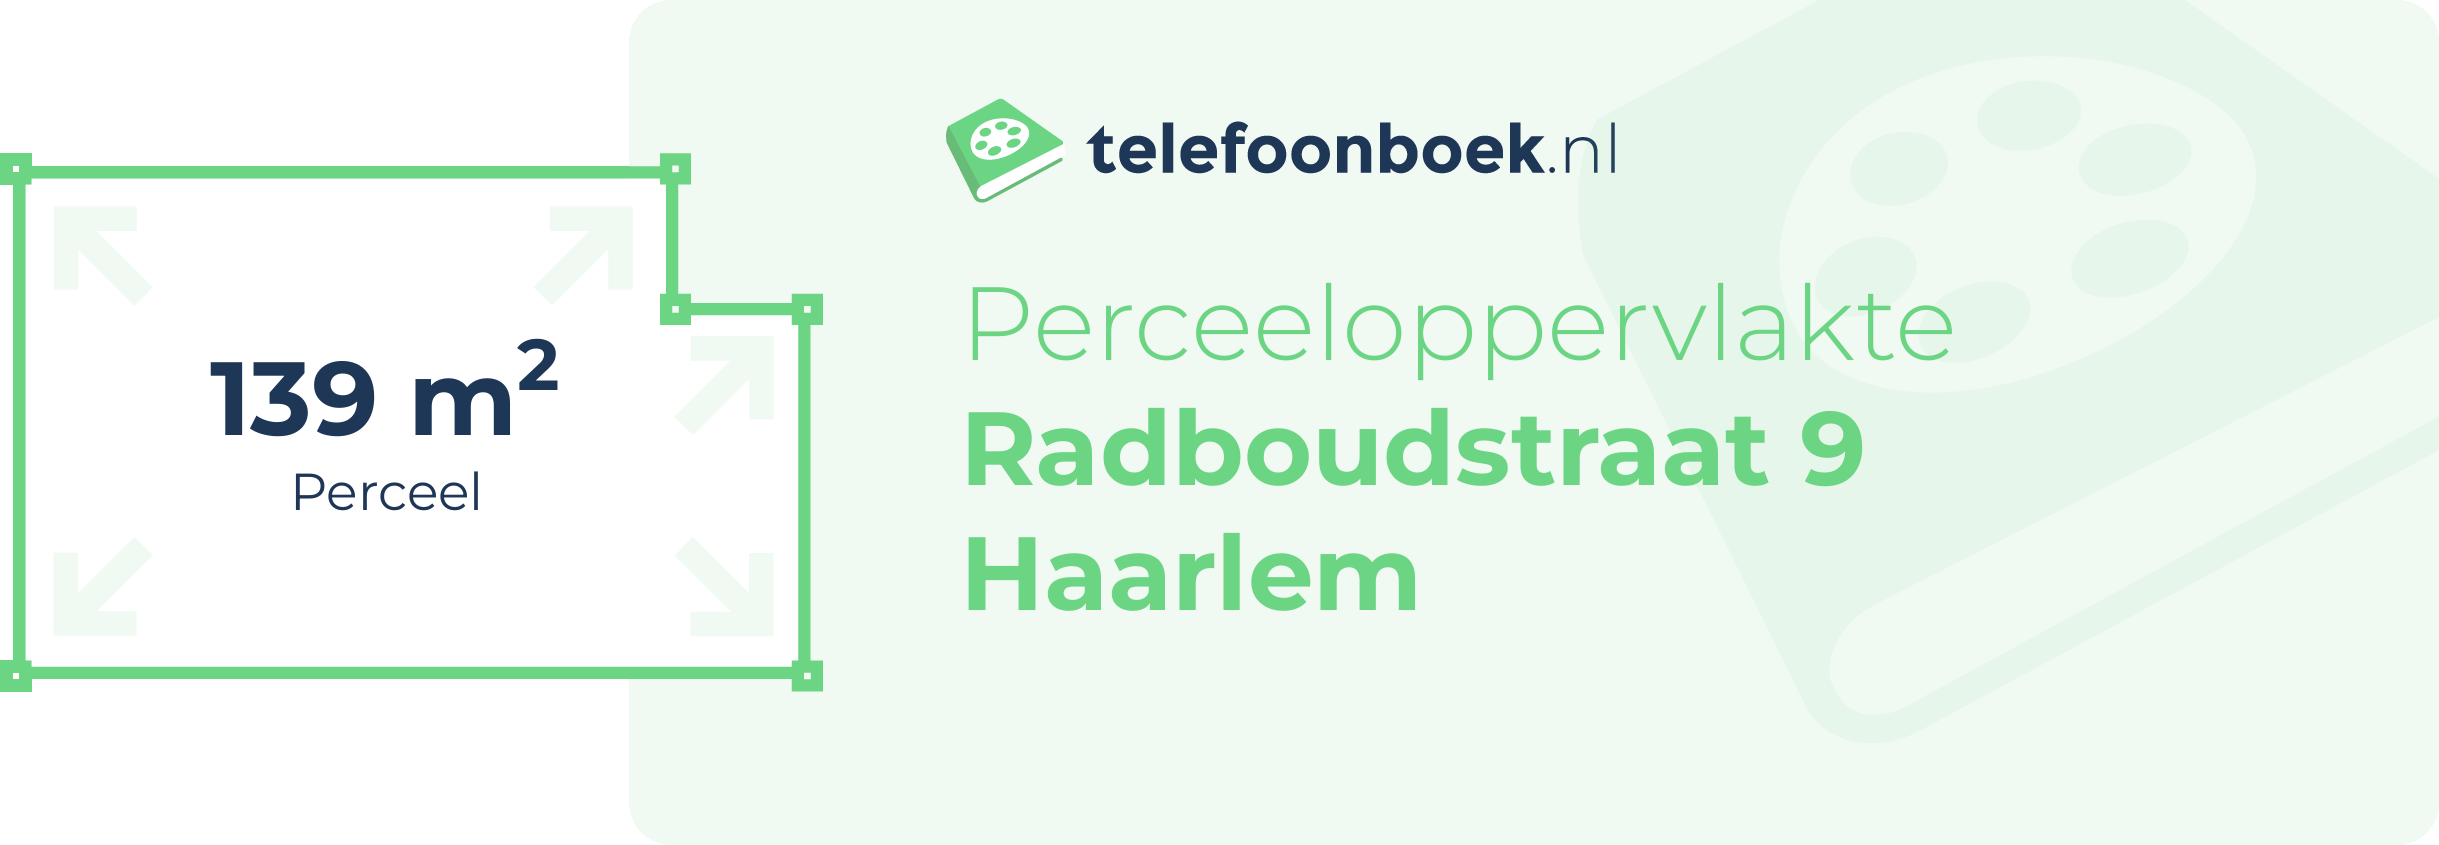 Perceeloppervlakte Radboudstraat 9 Haarlem